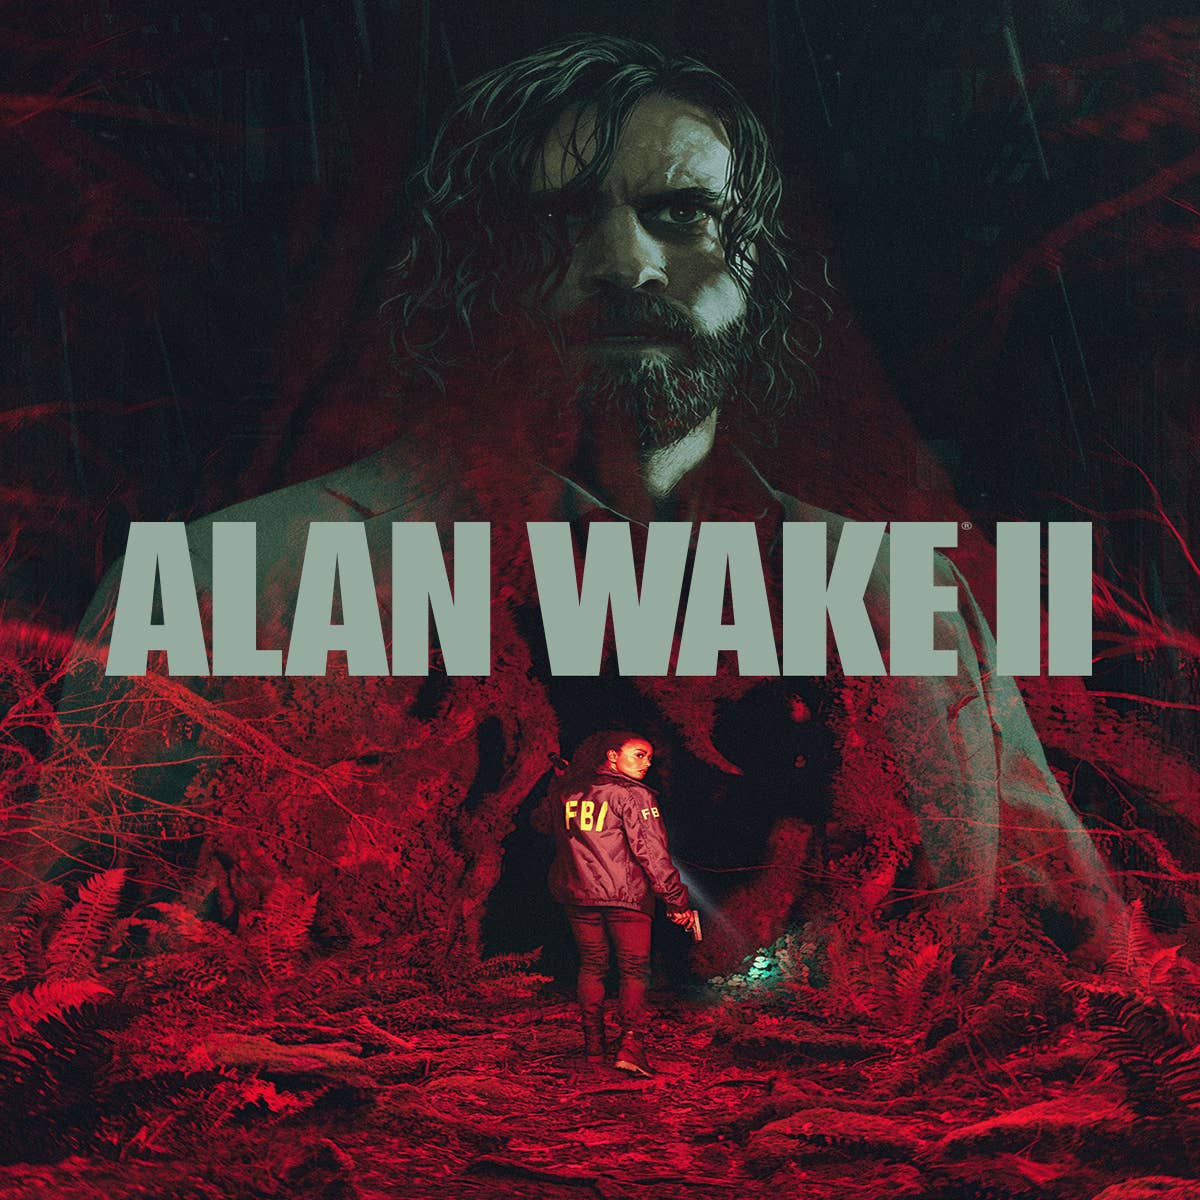 Steam :: Rock, Paper, Shotgun :: Alan Wake 2 is "supposed to